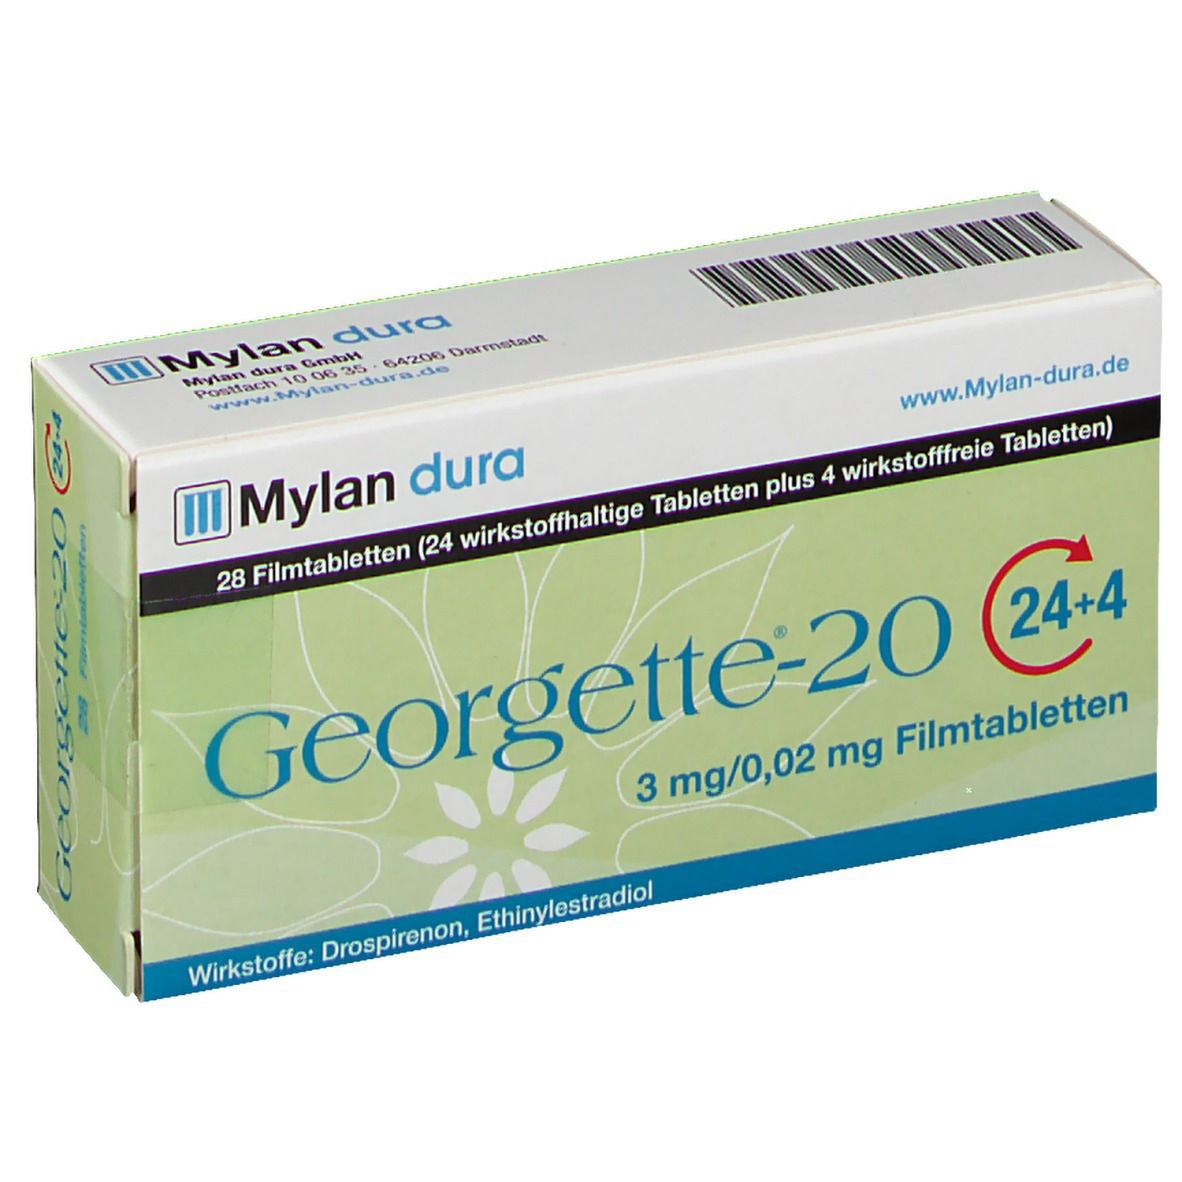 Georgette®-20 24+4 3 mg/0,02 mg